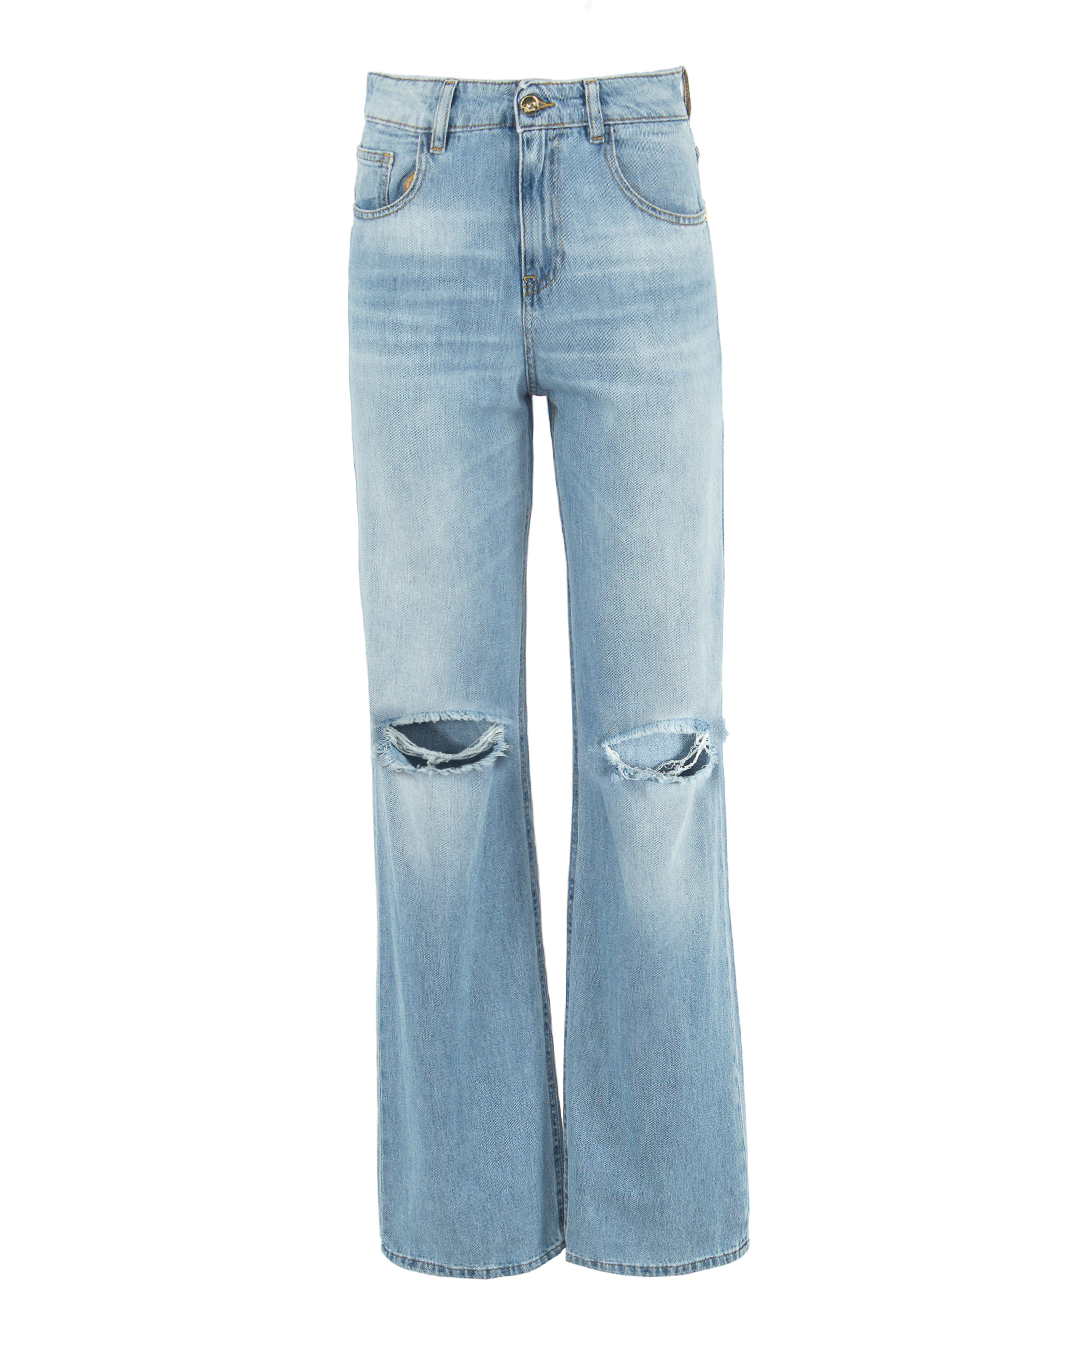 джинсы KAOS PP6BL006 синий 26, размер 26 - фото 1